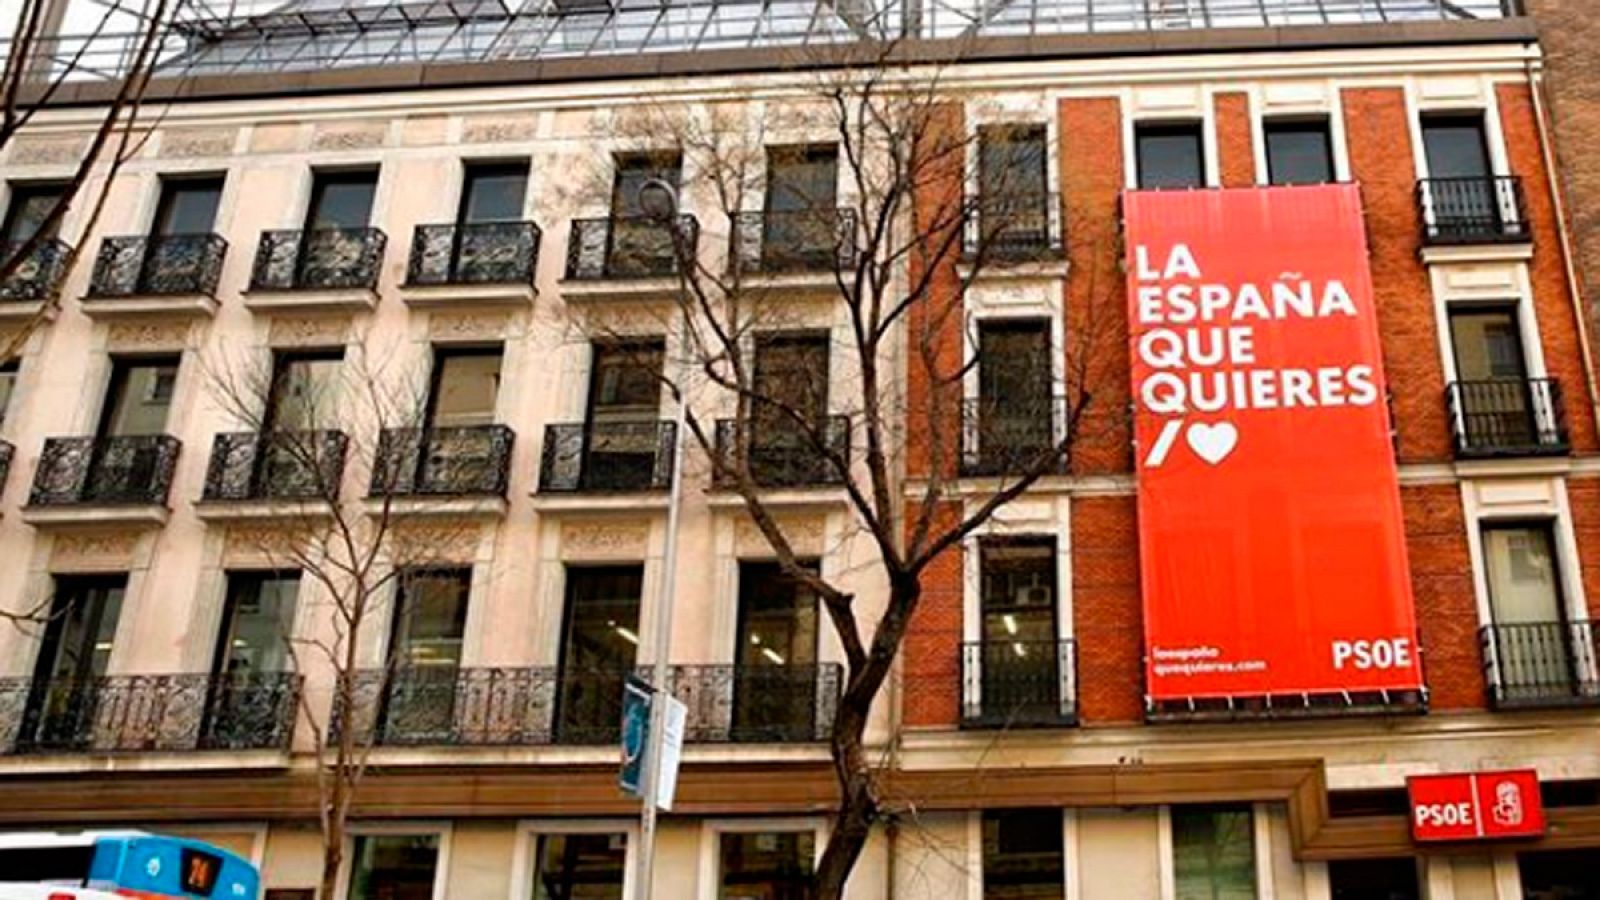 Sede del PSOE en Madrid con el lema de la precampaña, "La España que quieres"